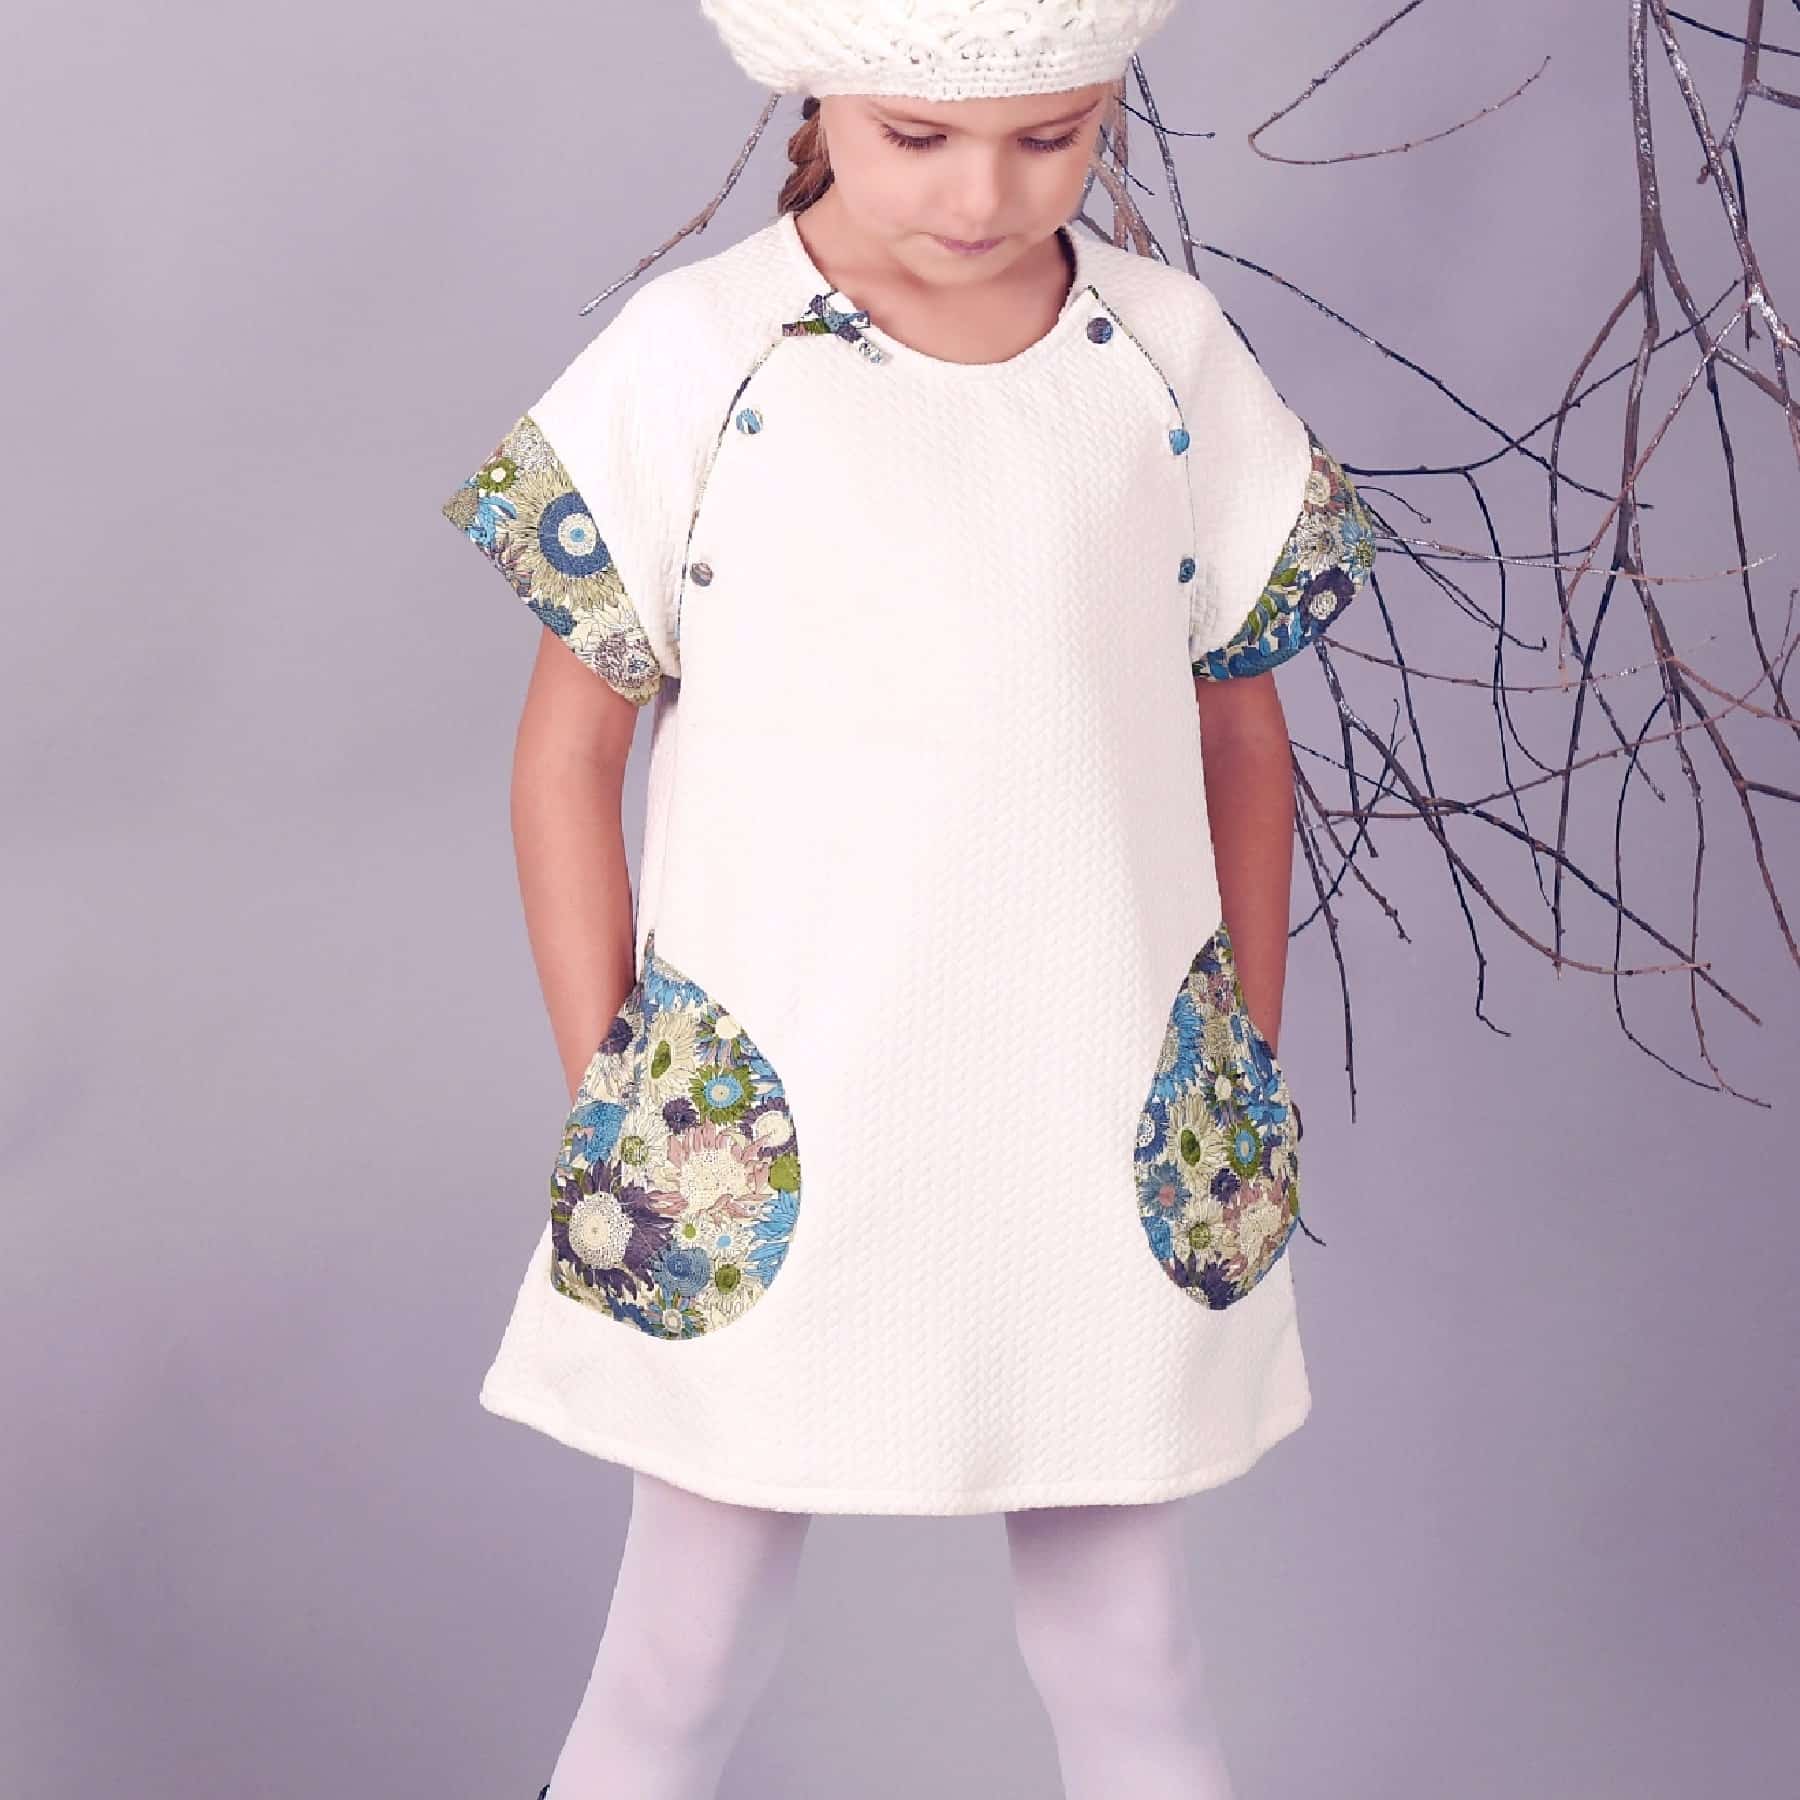 Une Adorable robe Style Années 60 en Tissu Acrylique Gaufré Beige , Manches Courtes Fleuries Vert,Marron, Bleu pour Filles de la Marque de Mode pour Enfant La Faute à Voltaire.